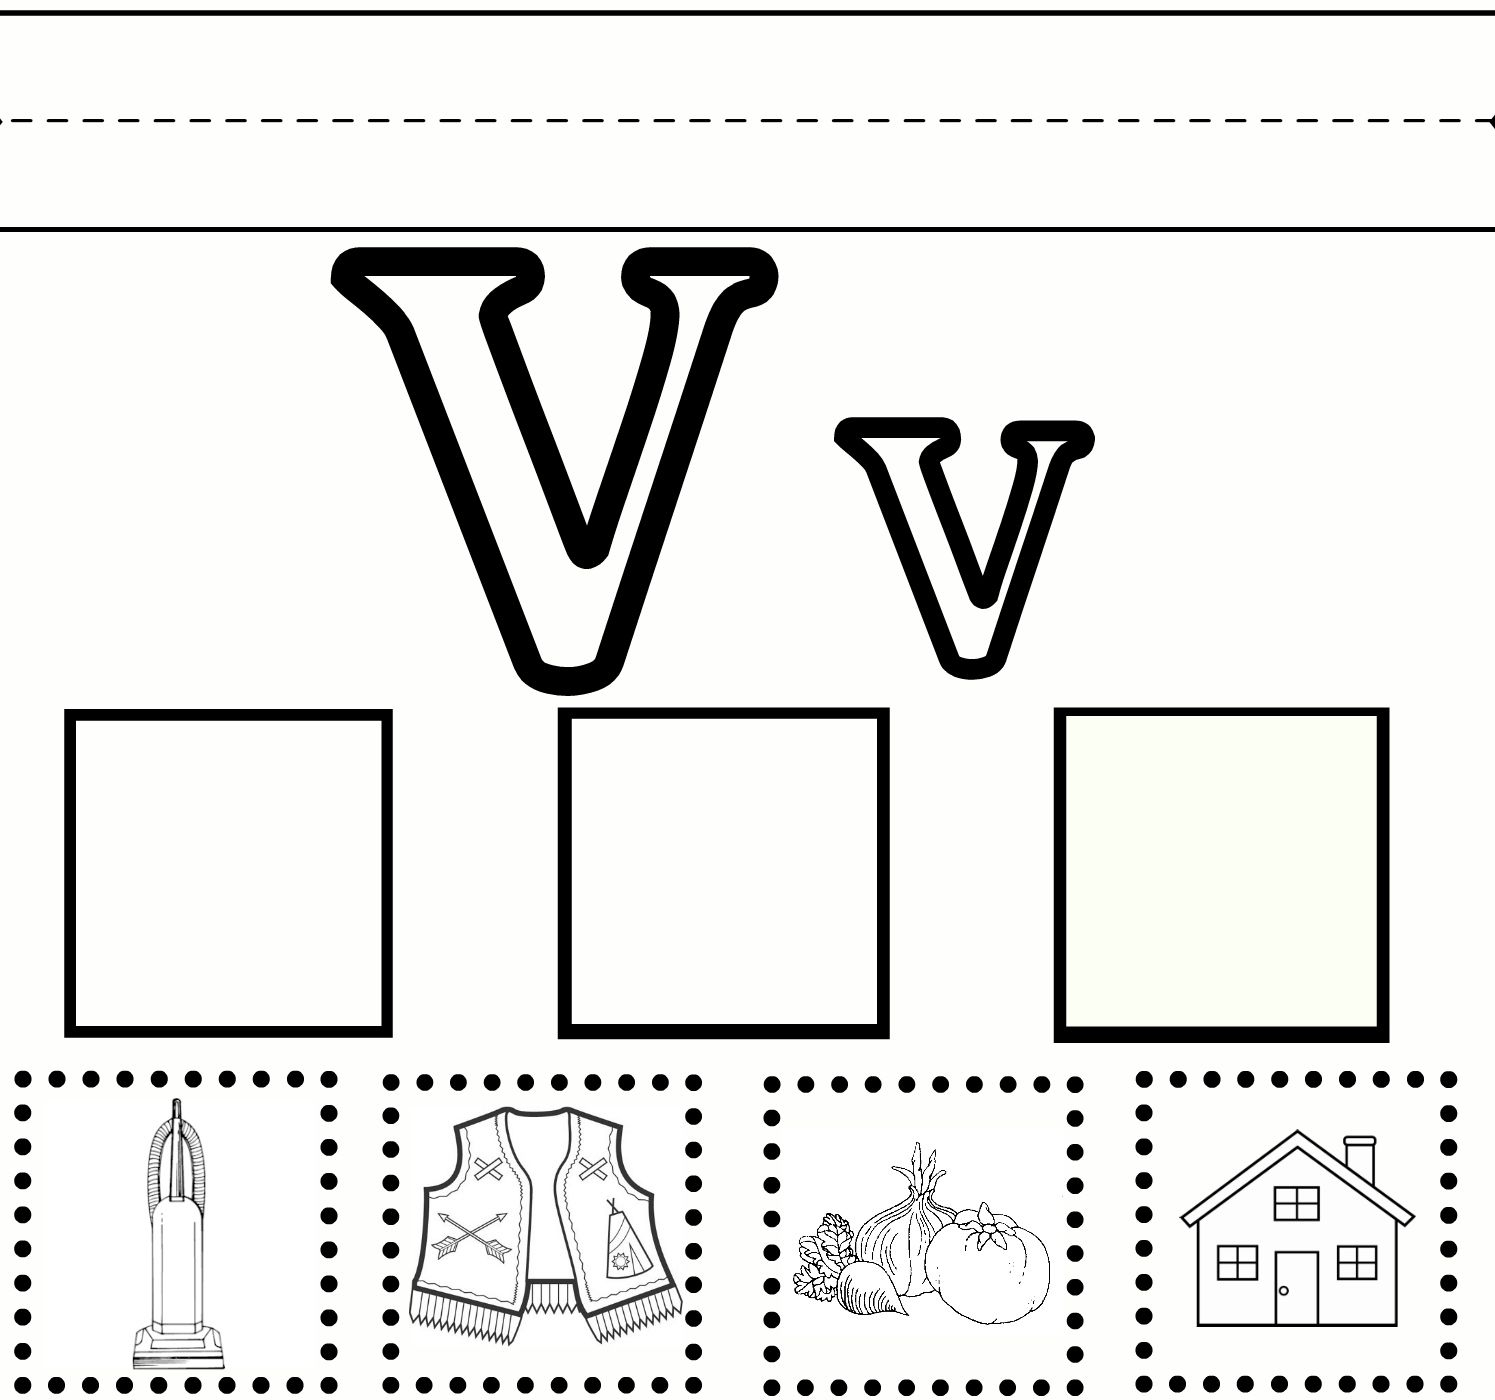 V Practice (With Images) | Letter V Worksheets, Preschool intended for Letter V Worksheets Free Printables